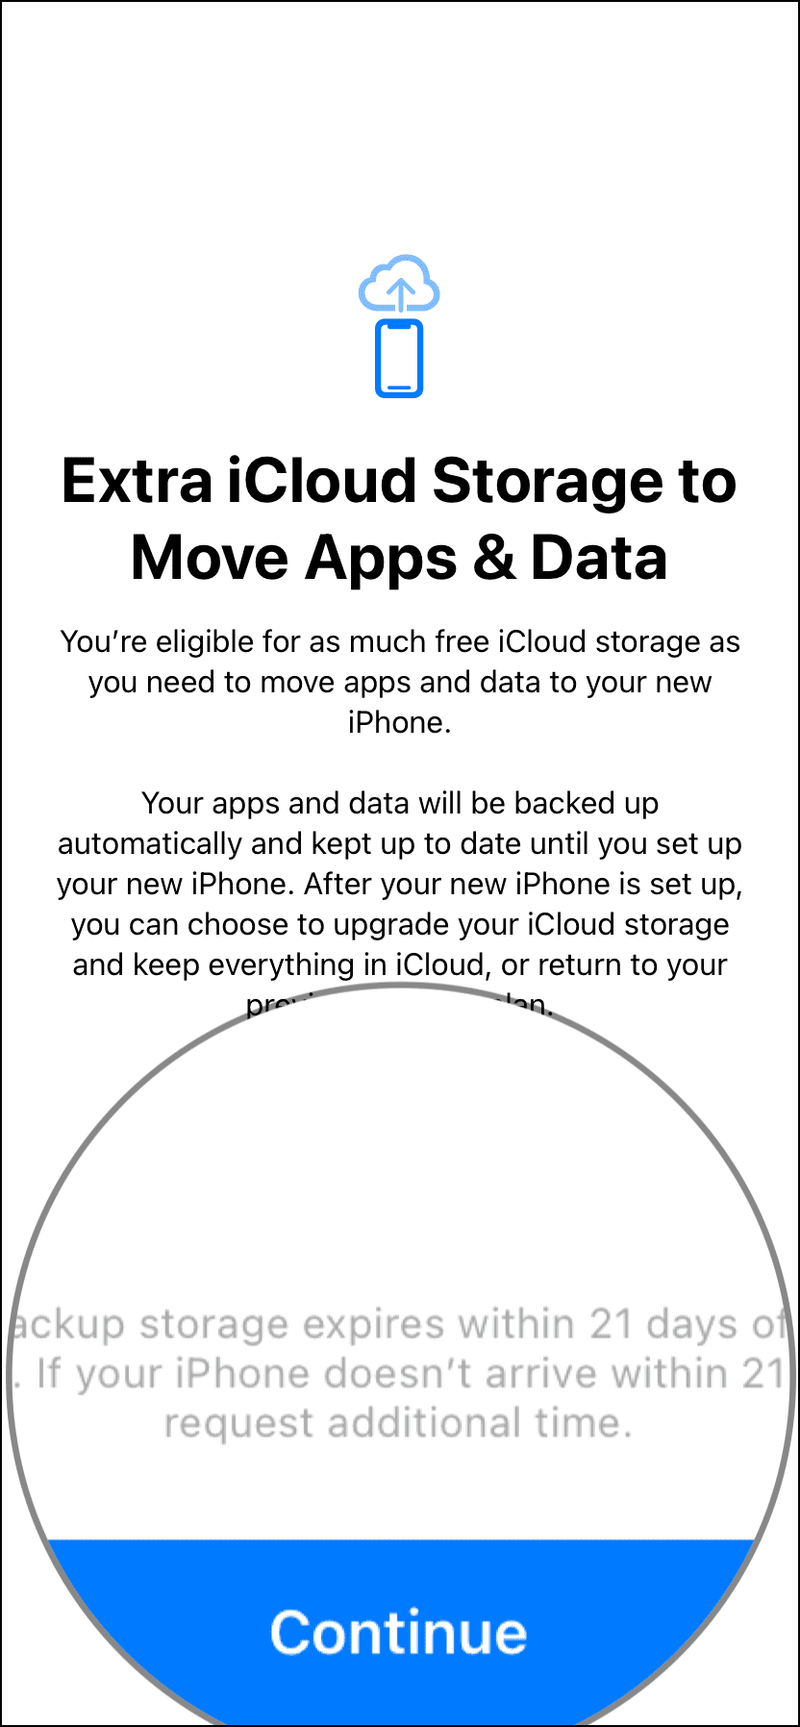 Fordern Sie nach 21 Tagen zusätzliche Zeit für ein temporäres iCloud-Backup auf dem iPhone an